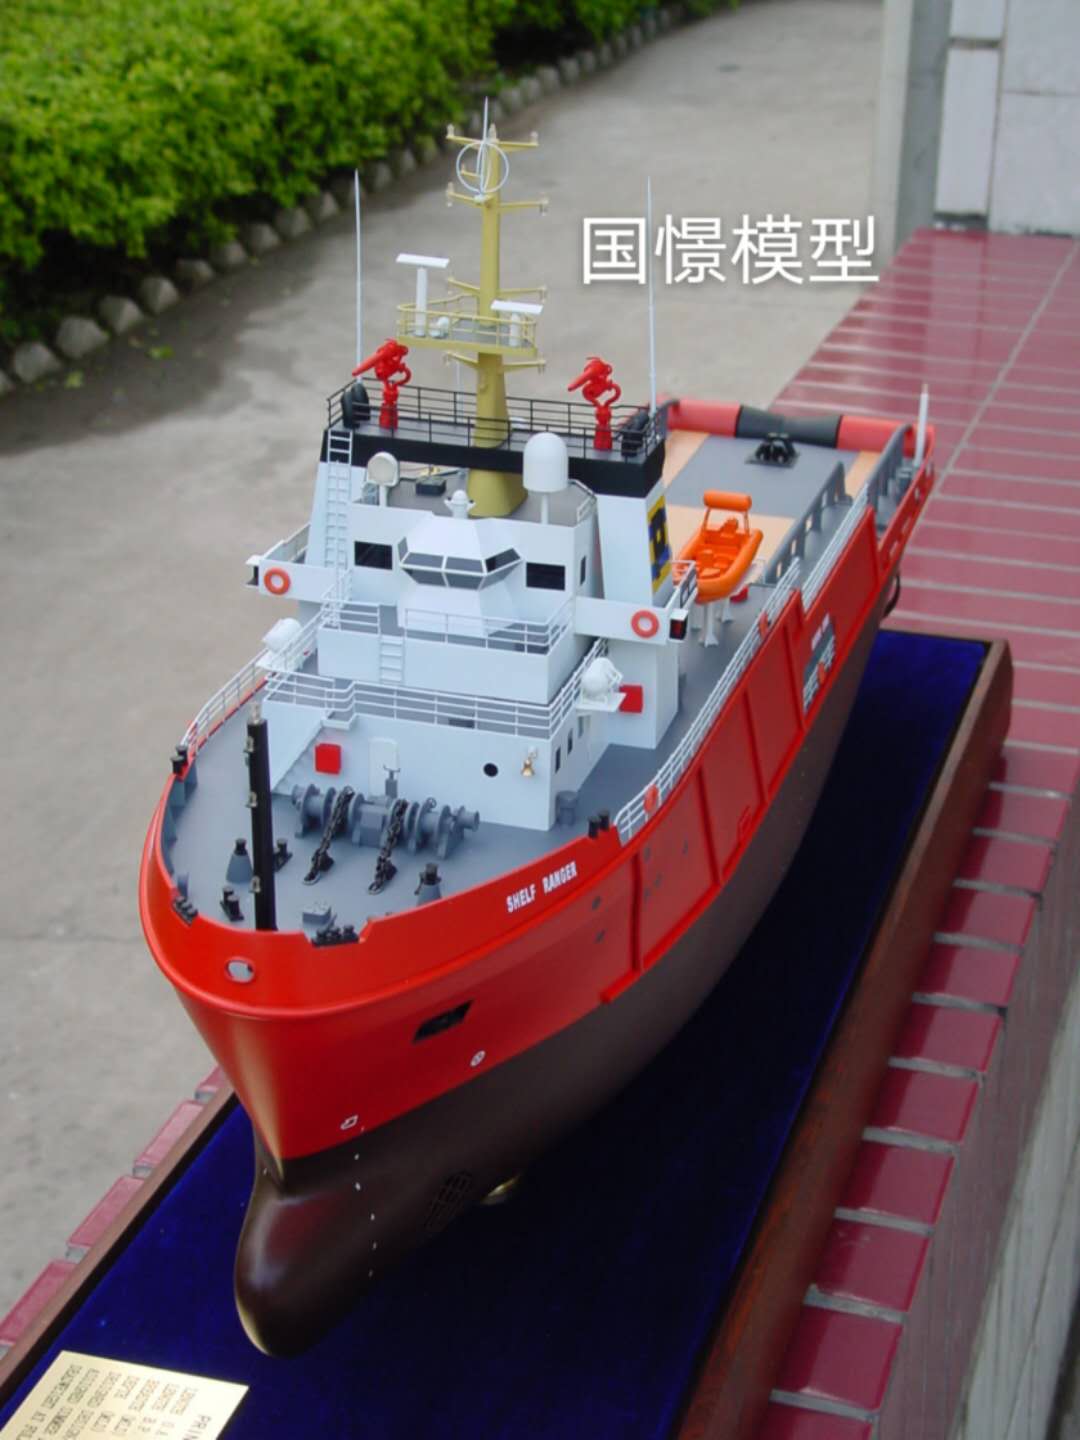 天津船舶模型